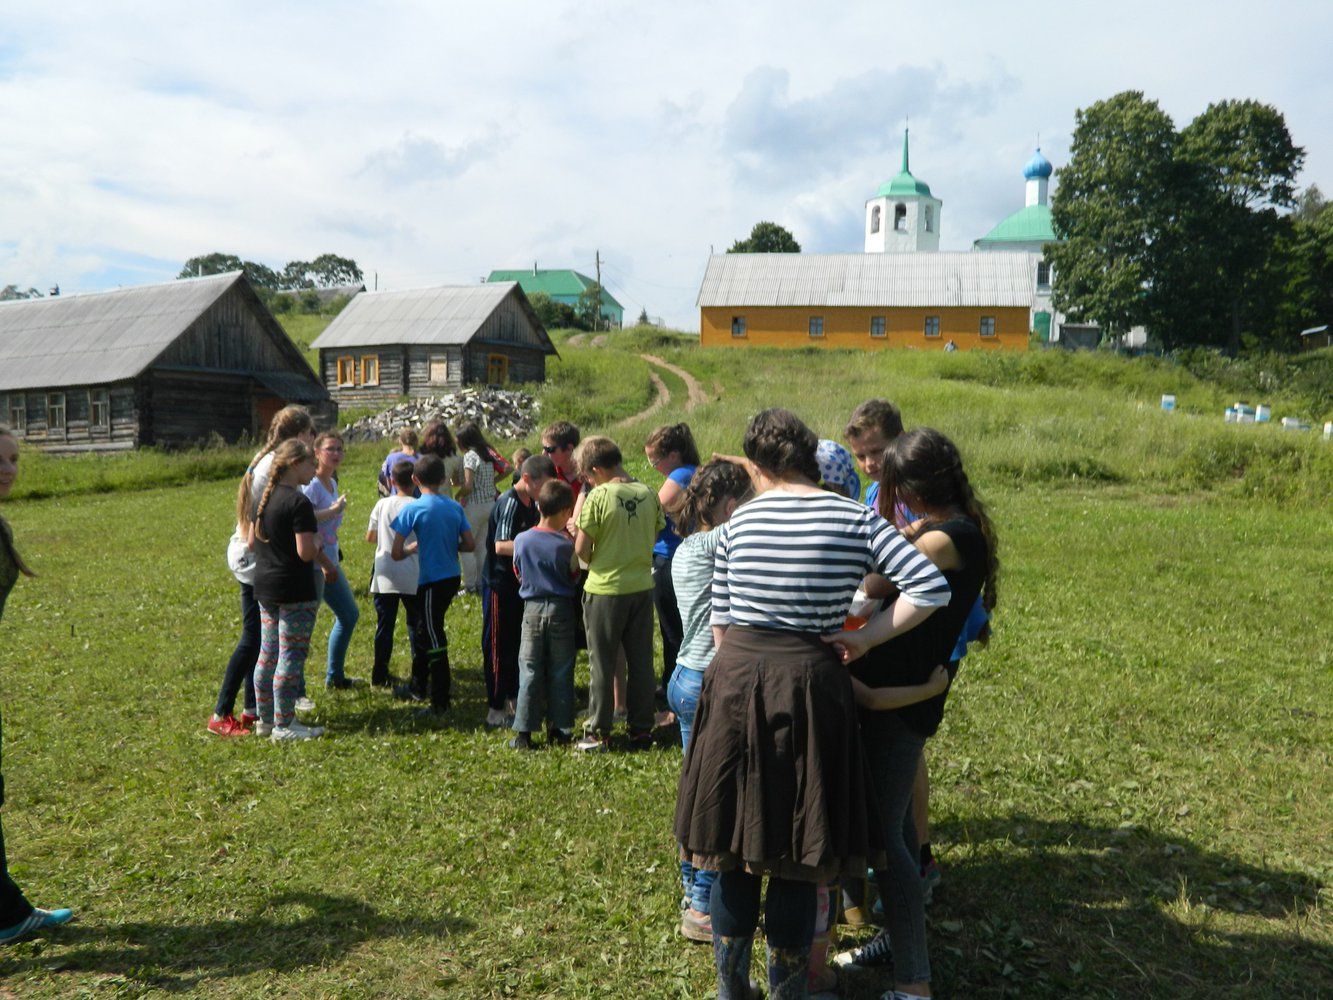 В этом году Псковский городской молодежный центр организовал паломническую поездку для детей и молодежи.Каждый год количество желающих принять участие в поездке возрастает, в этот раз в экспедиции приняли участие 45 человек. Основная масса участников - в возрасте от 12 до 25 лет.